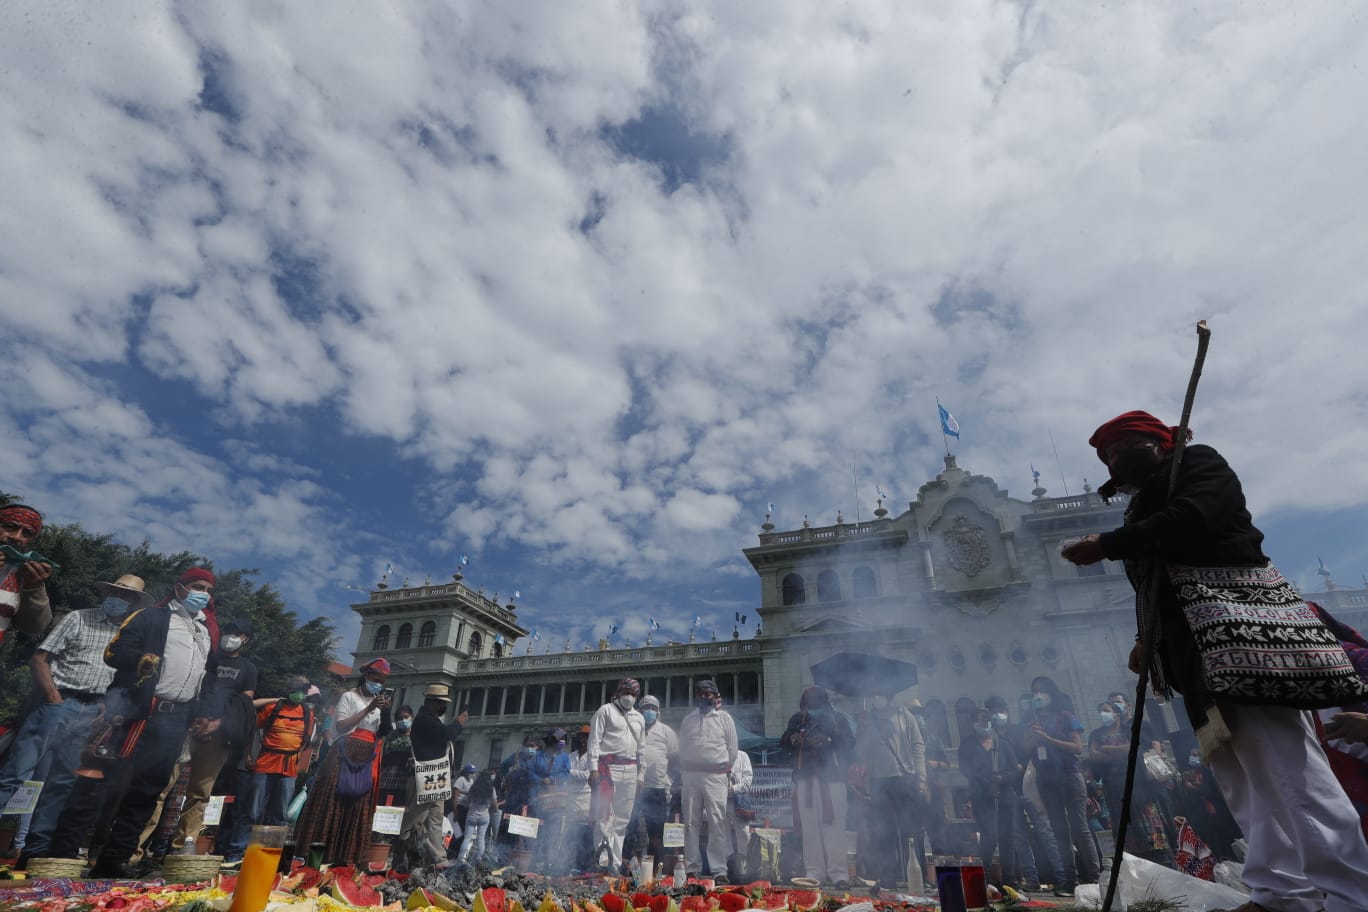 Autoridades indígenas celebraron una ceremonia maya en la Plaza de la Constitución en rechazo a la celebración del Bicentenario de Independencia. (Foto Prensa Libre: Esbin García)